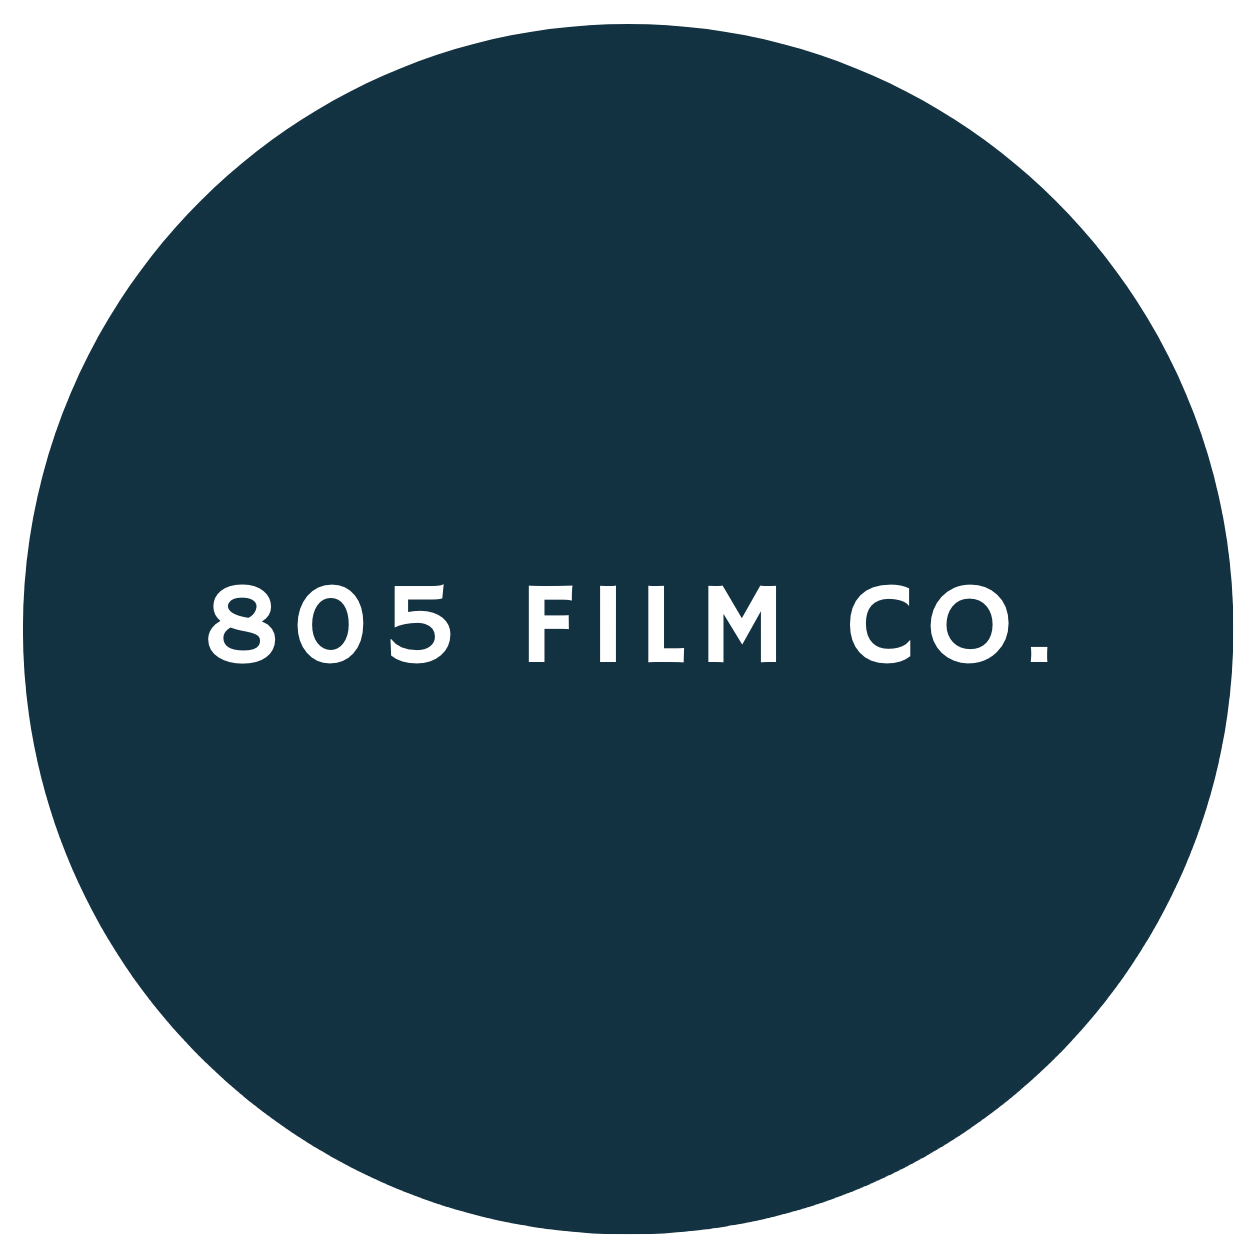 805 Film Co.